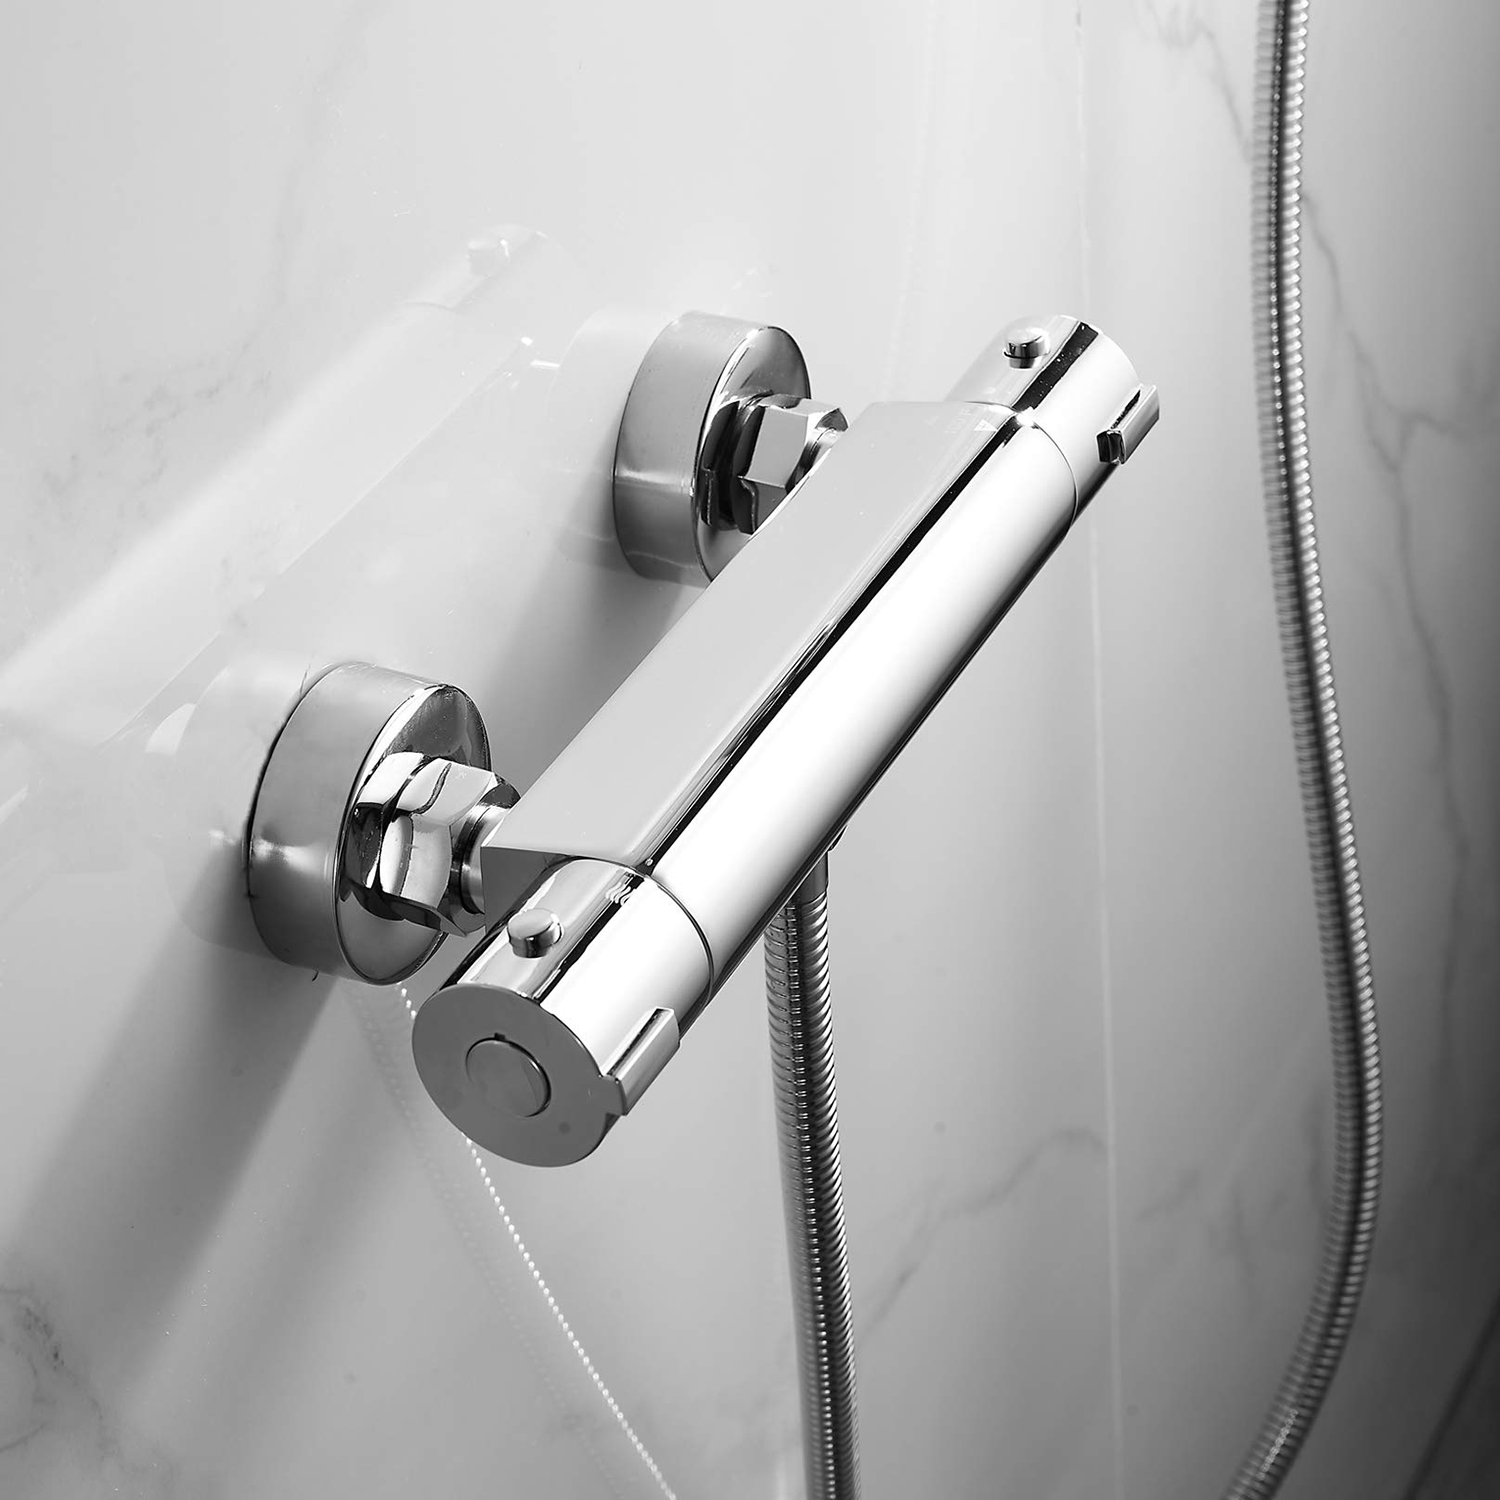 Robinet mitigeur thermostatique pour barre de douche, maison moderne, robinets chromés pour salle de bains, double sortie